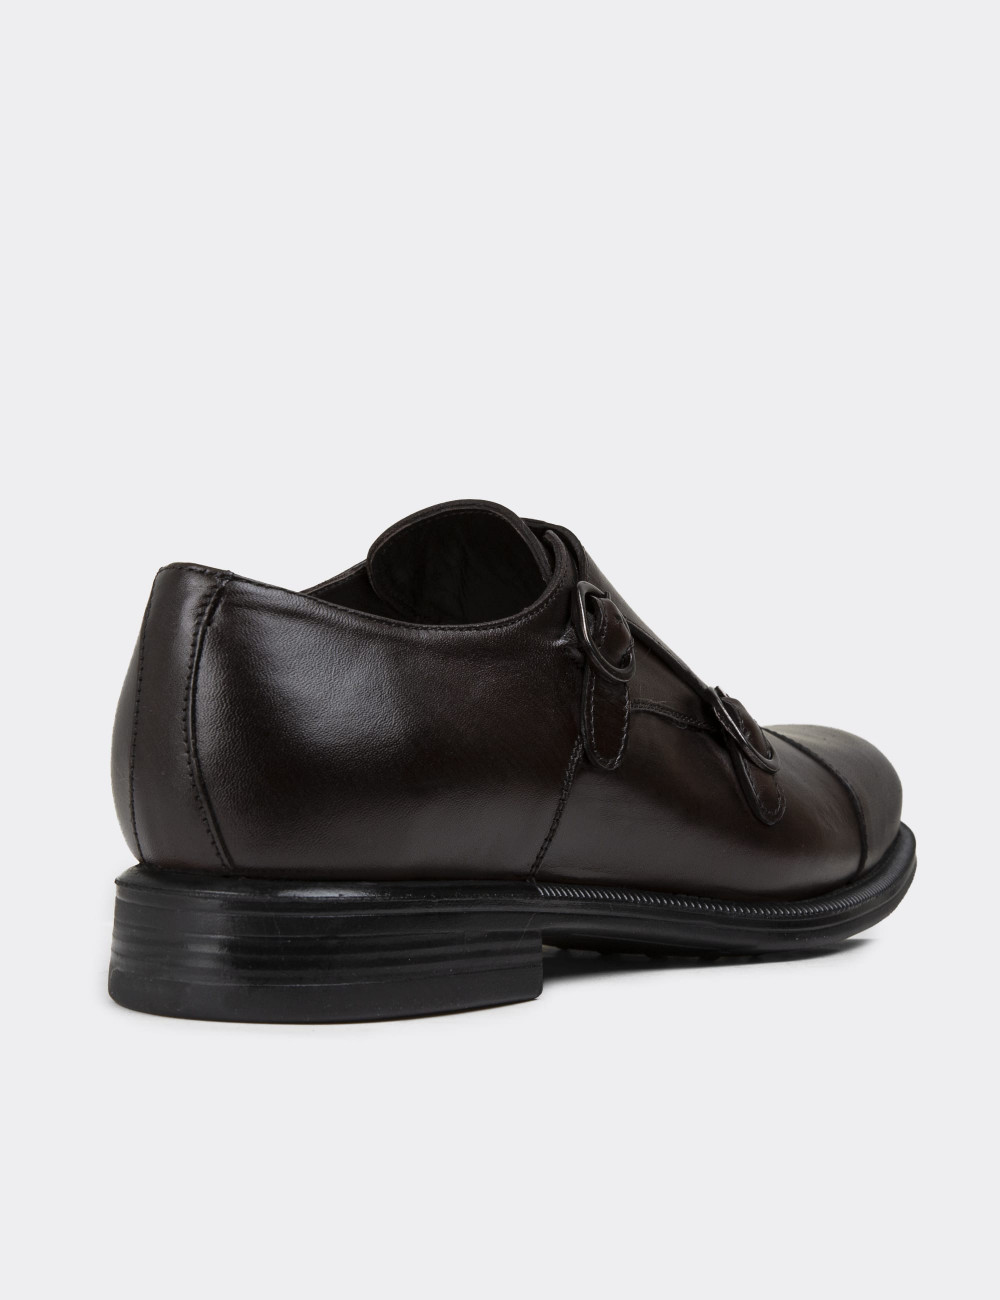 Hakiki Deri Kahverengi Çift Tokalı Erkek Klasik Ayakkabı - 01838MKHVC01